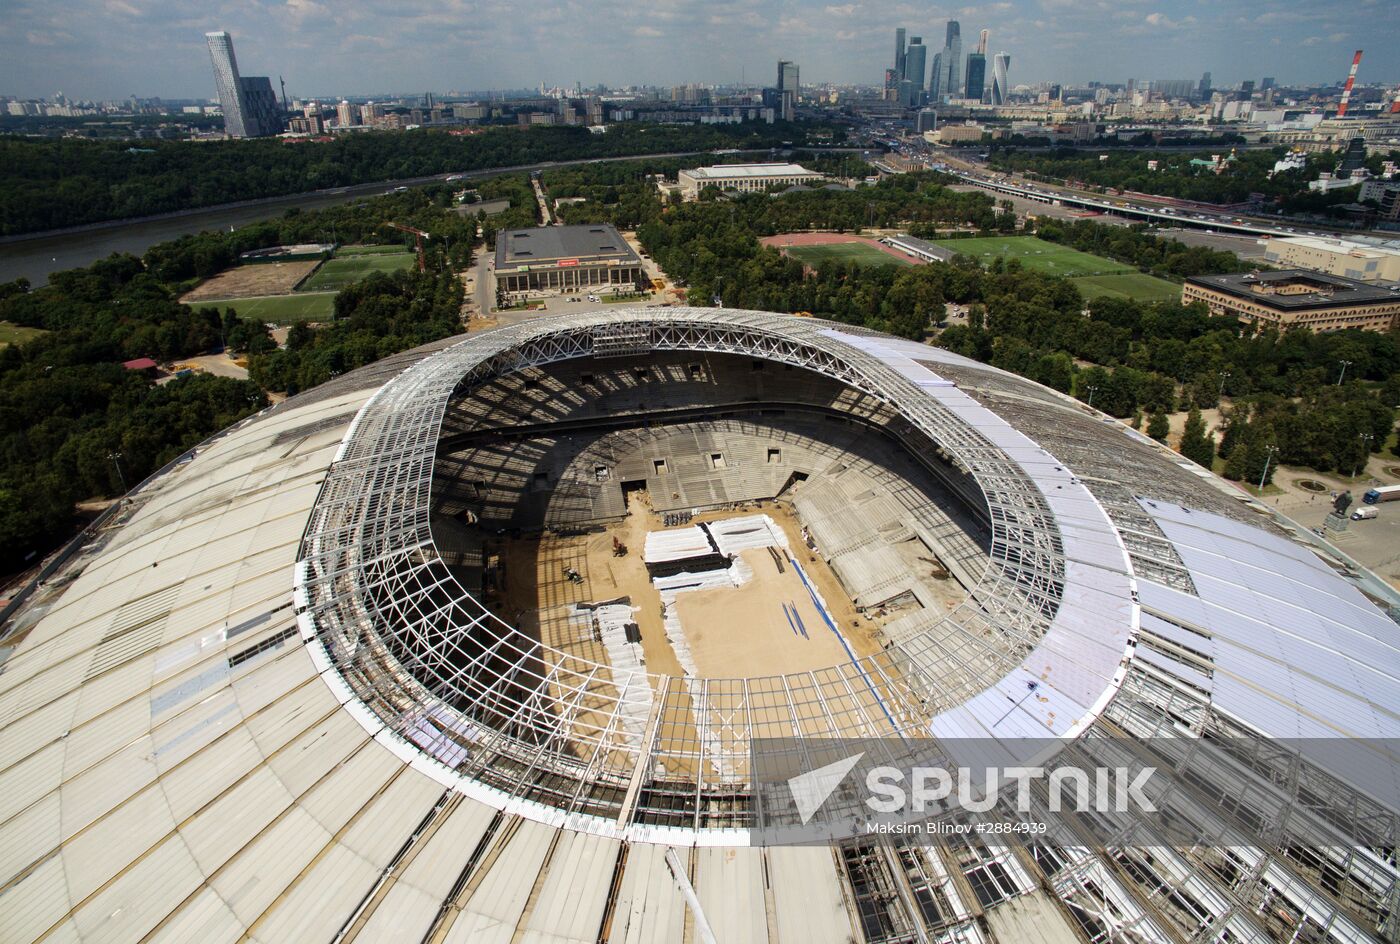 Luzhniki Stadium under construction in Moscow